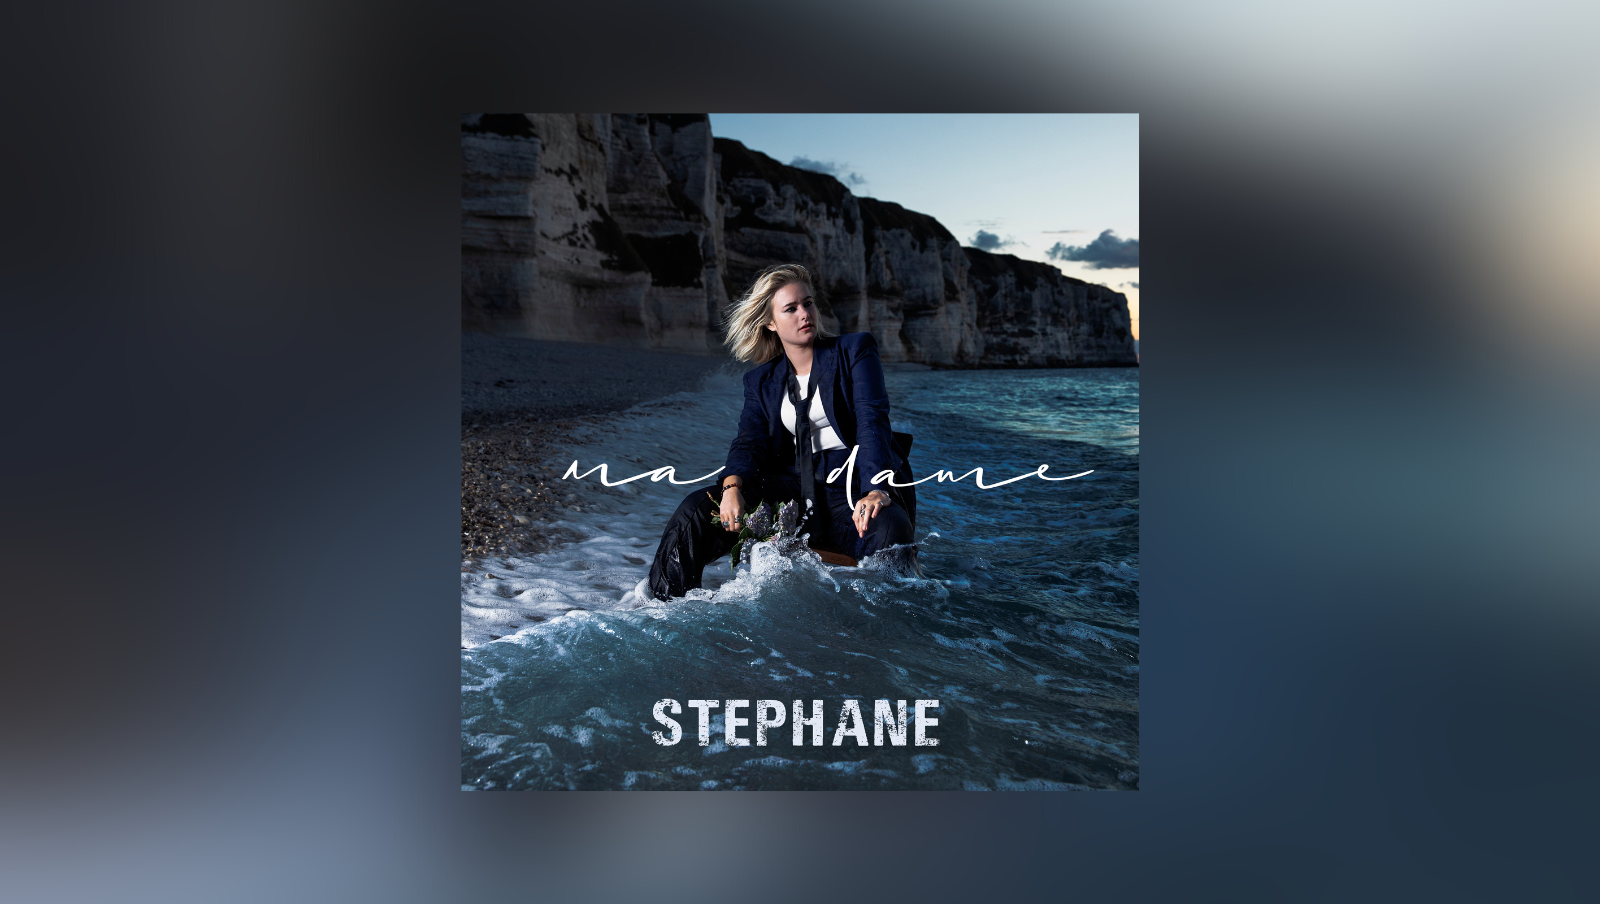 Le premier album de Stéphane “Madame” est sorti !